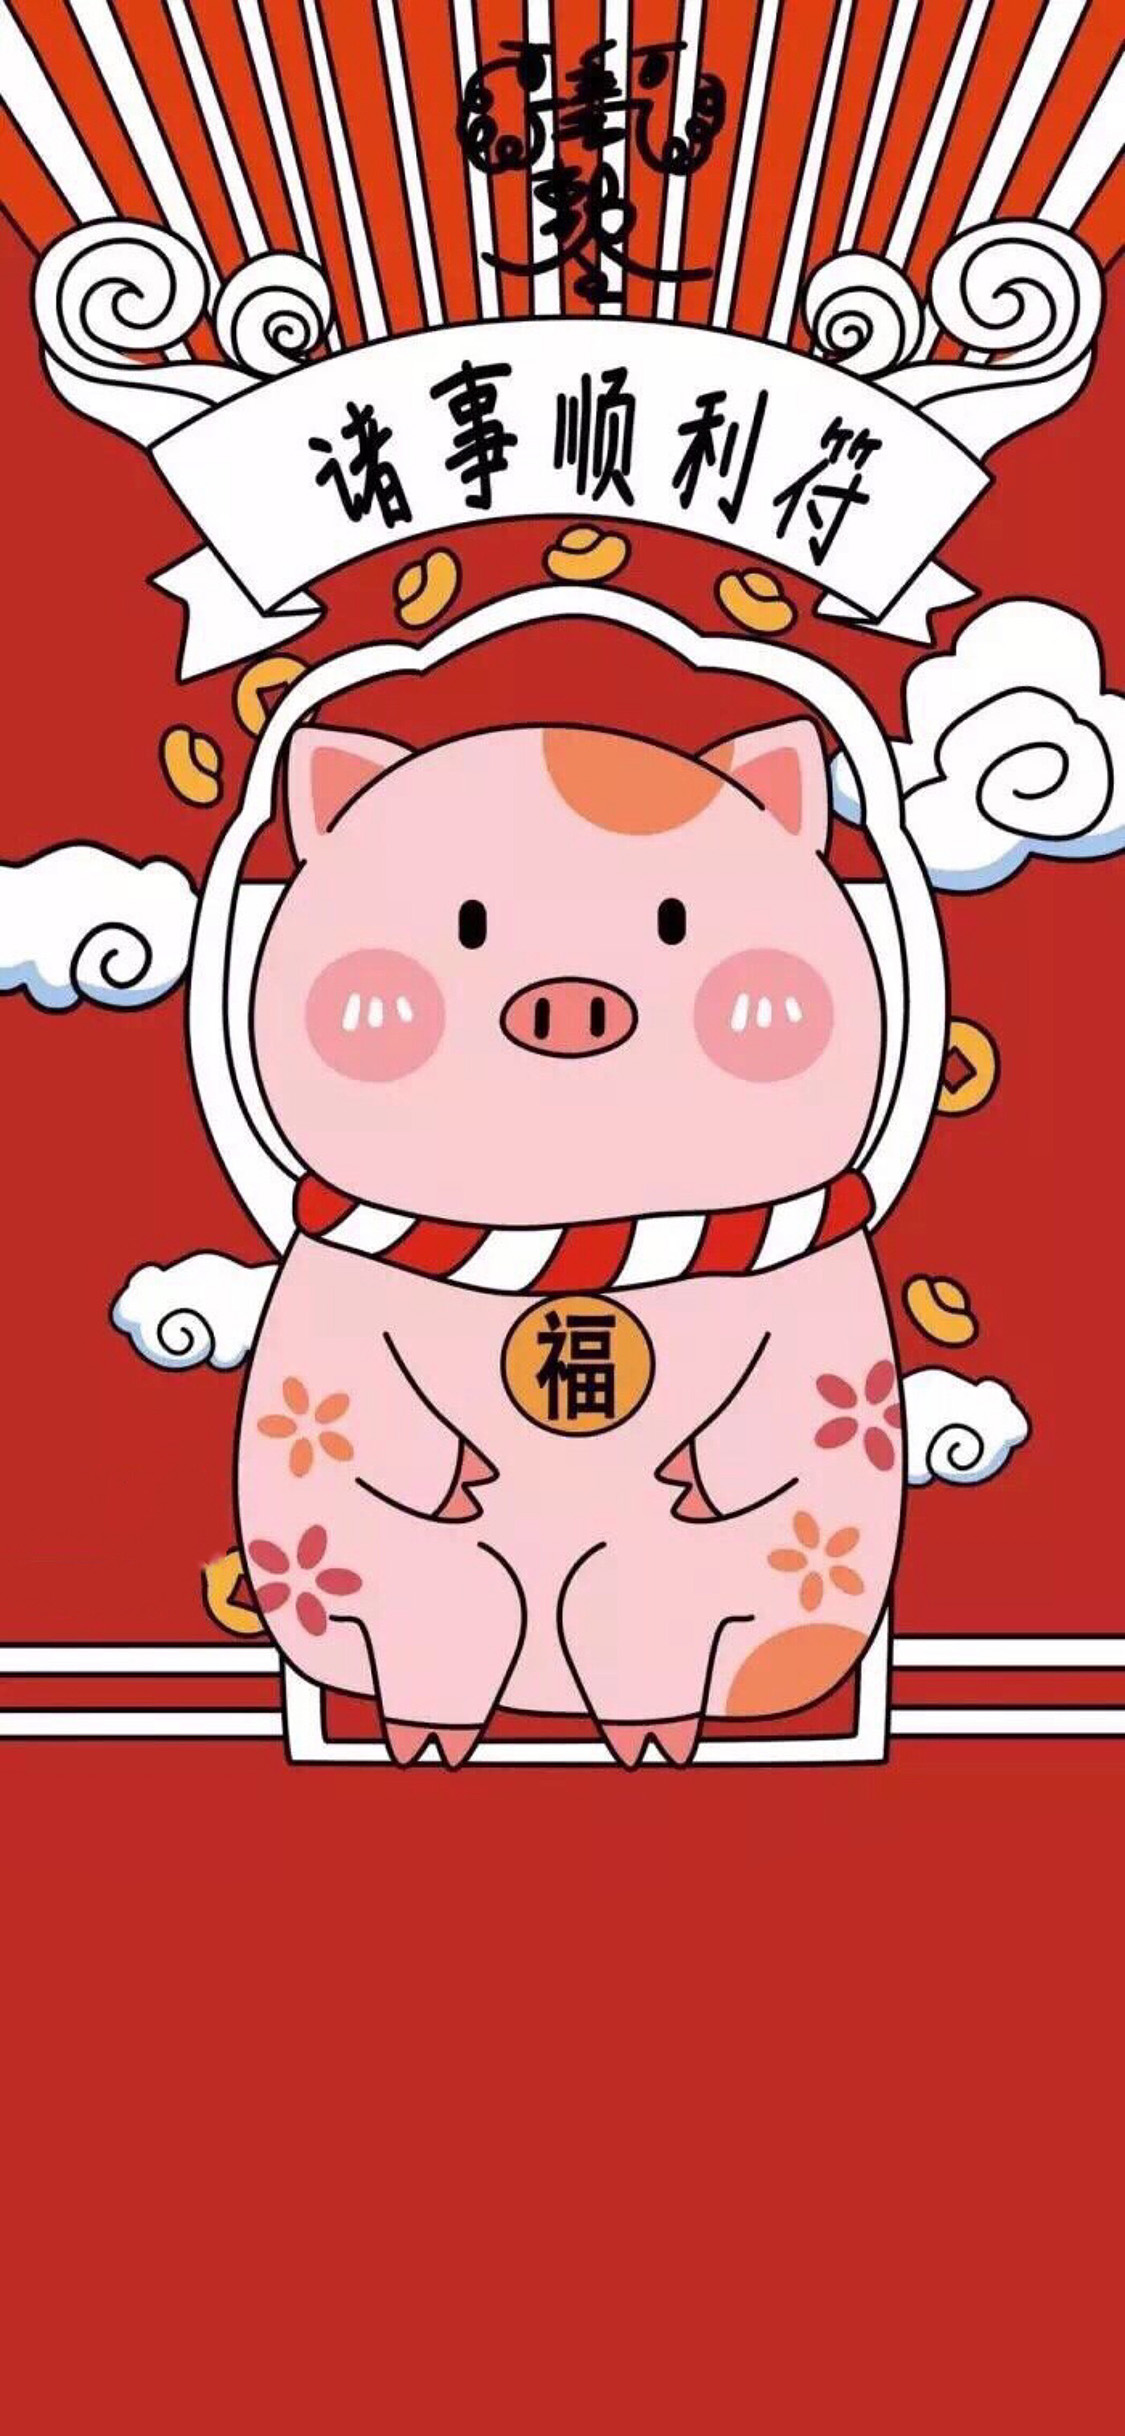 2019猪年招财手机壁纸推荐 24张猪年开运壁纸 祝大家猪事顺利!